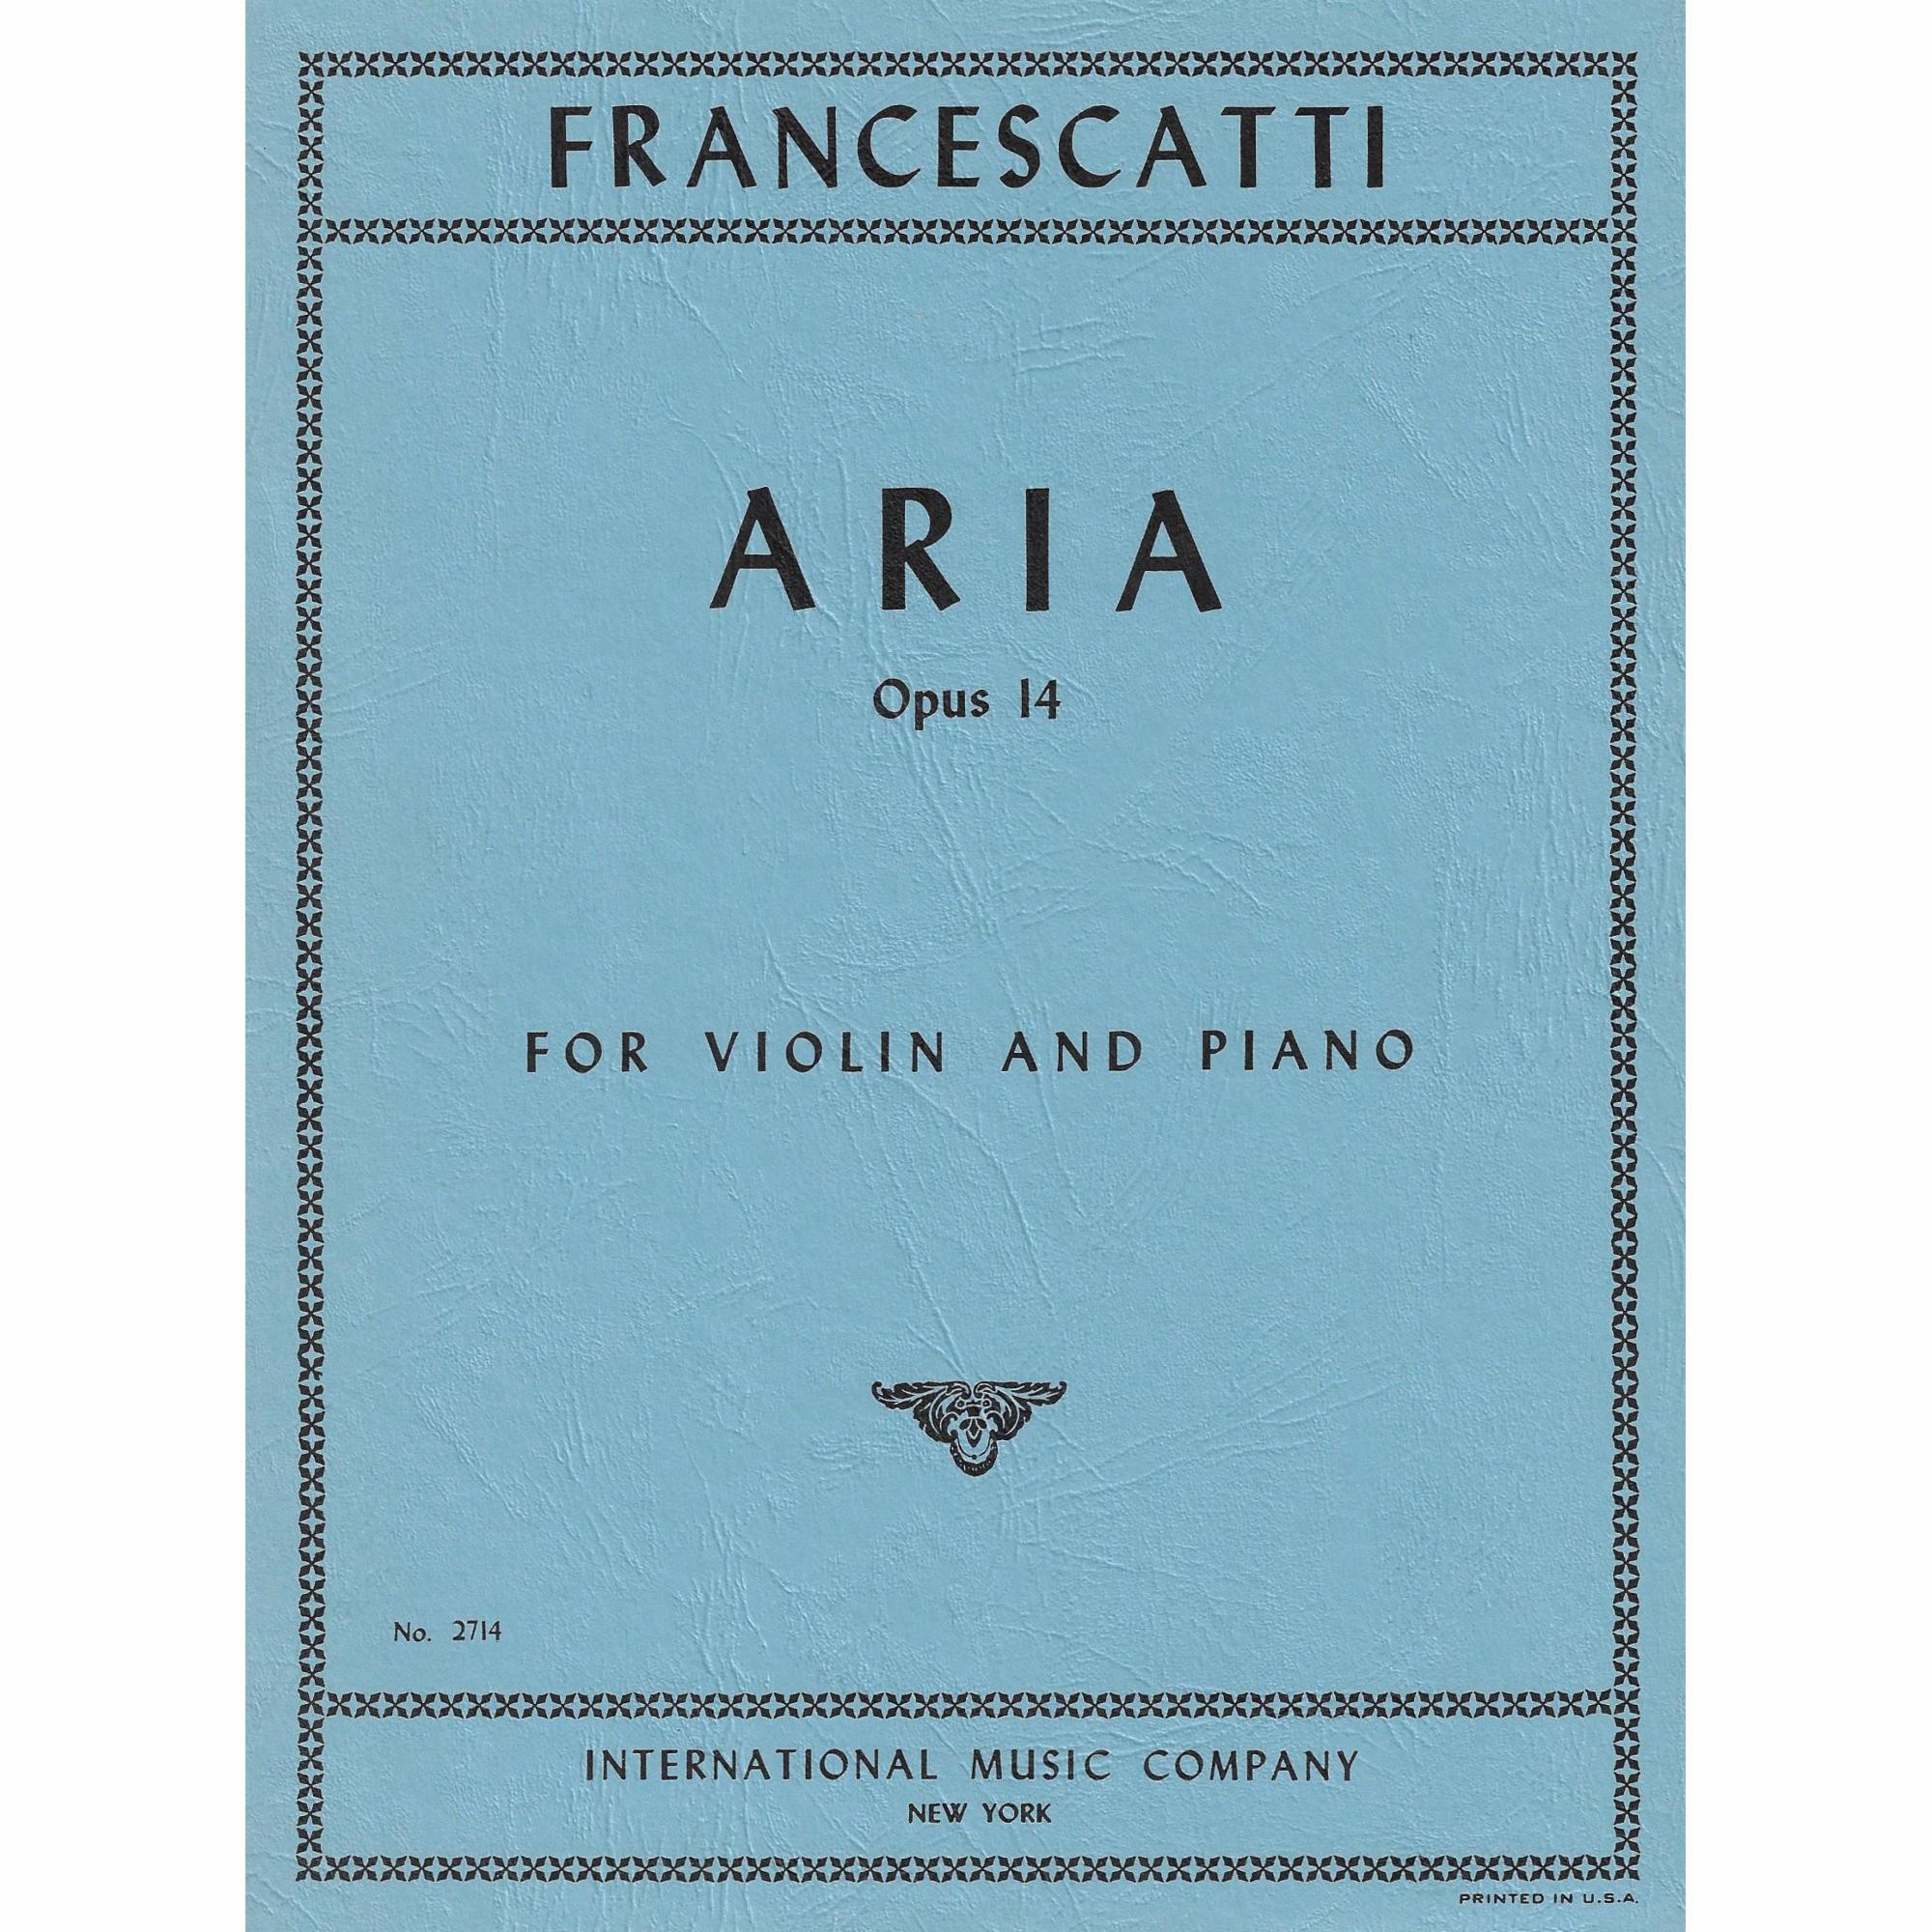 Francescatti -- Aria, Op. 14 for Violin and Piano